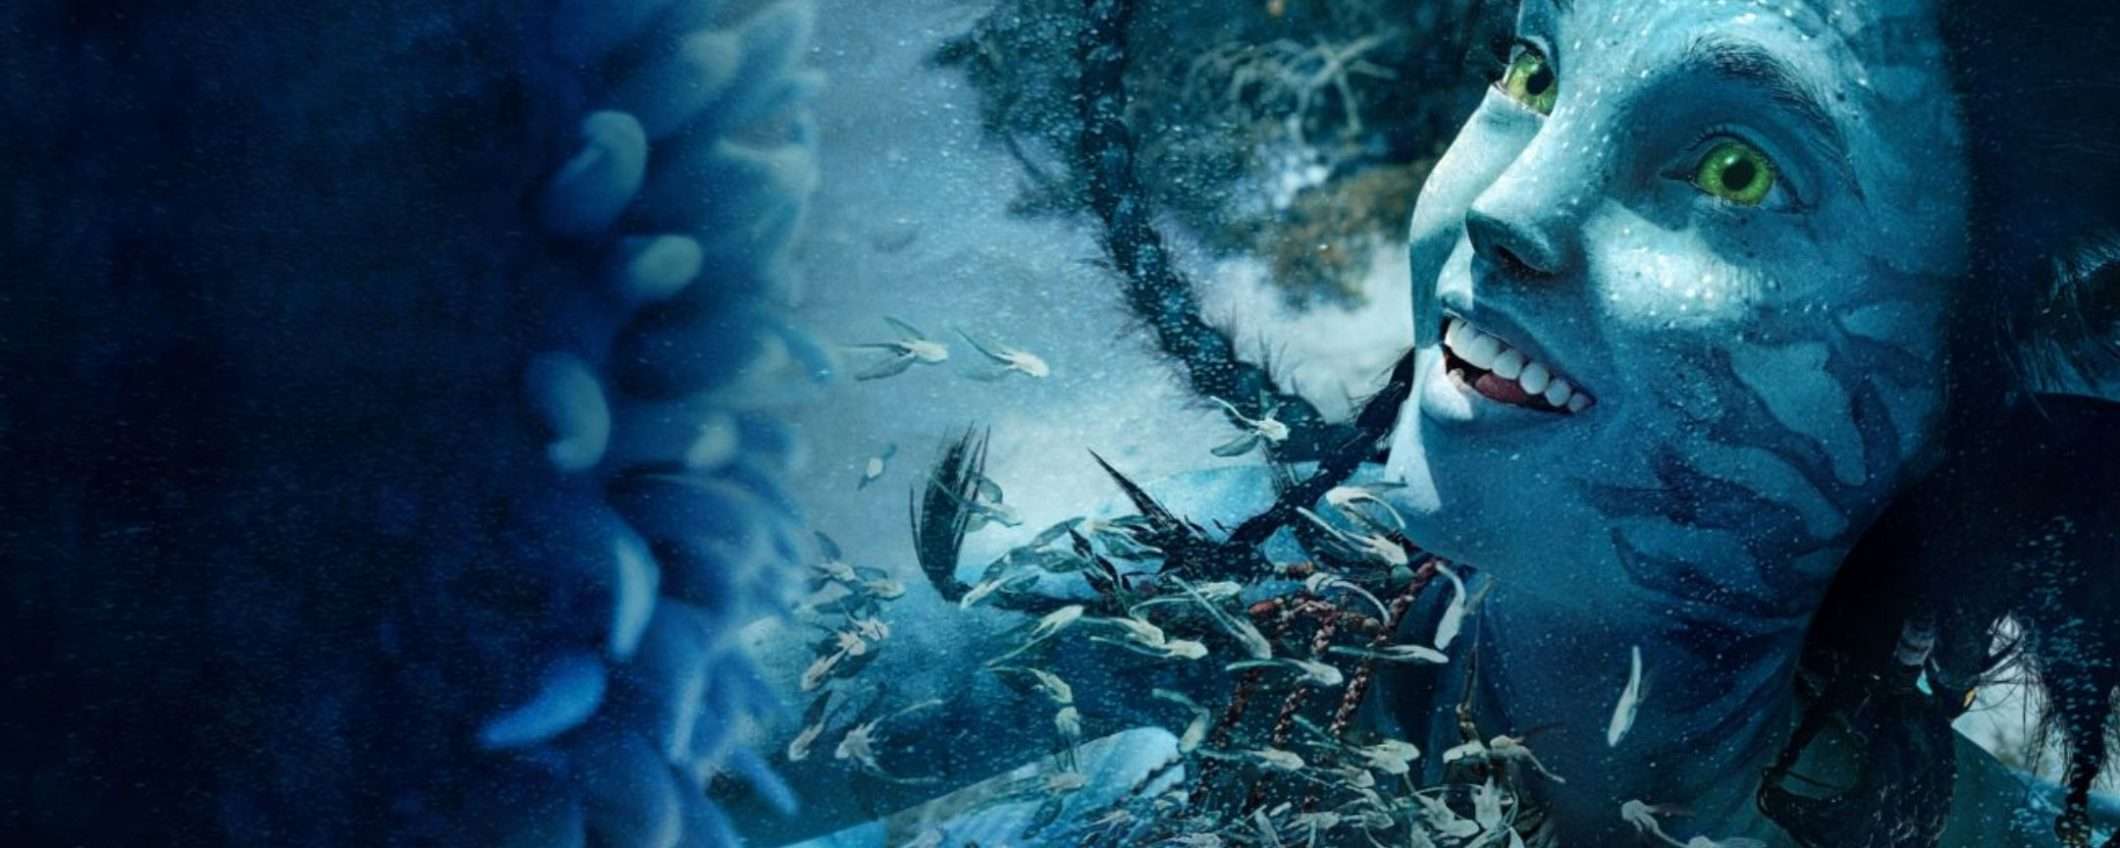 Avatar 2 è il terzo film per incassi nella storia: battuto solo da questi due